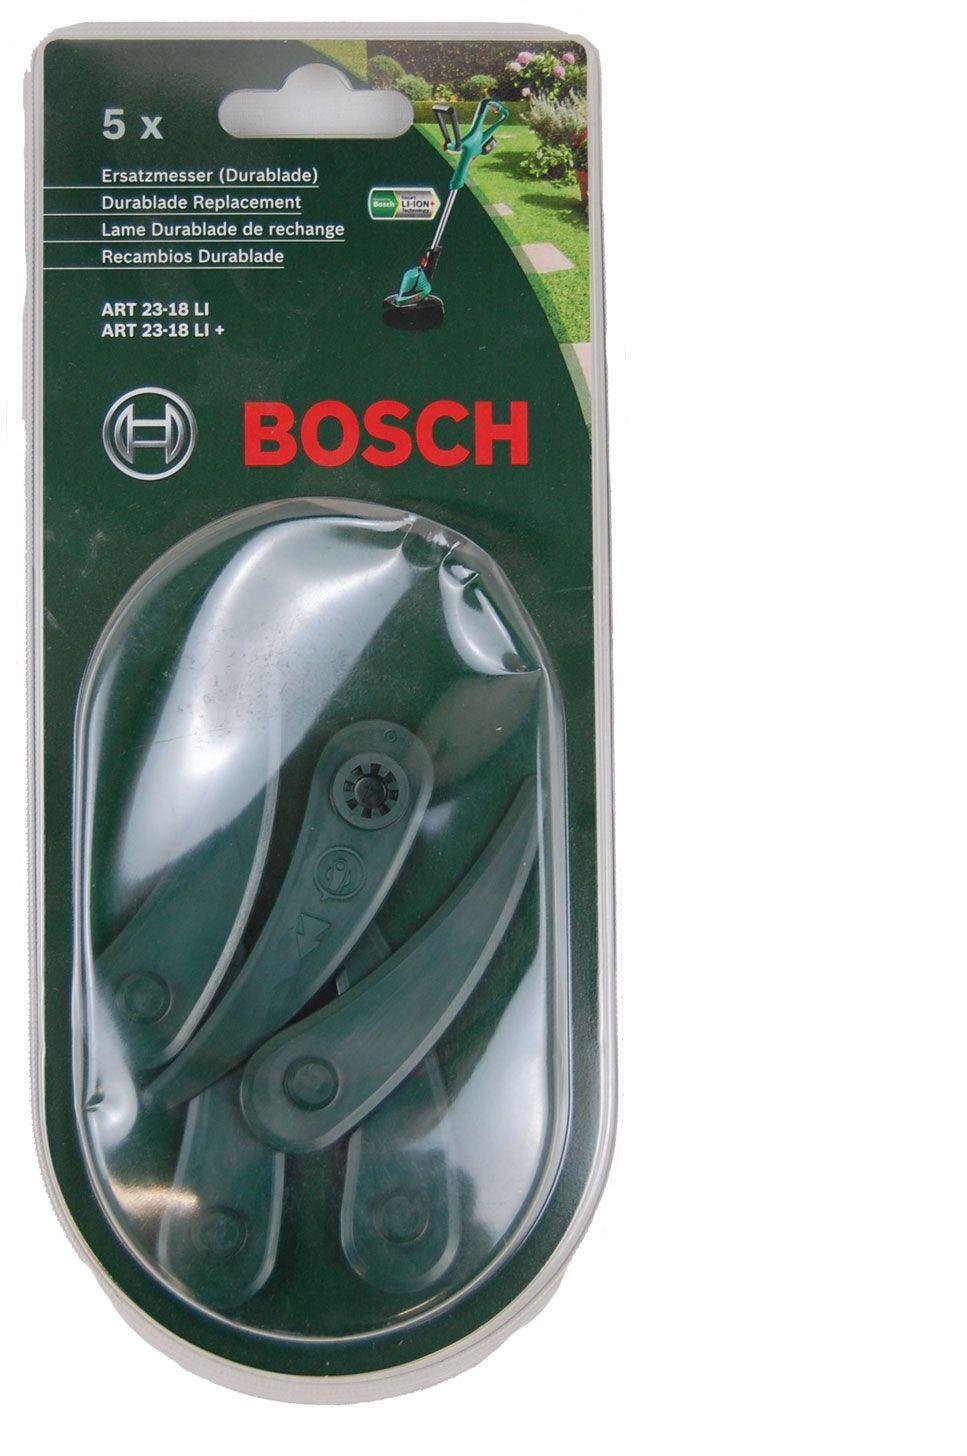 Ersatzmesser für Bosch Kunststoffmesser System Zubehör Rasentrimmer ART 26-18 LI 